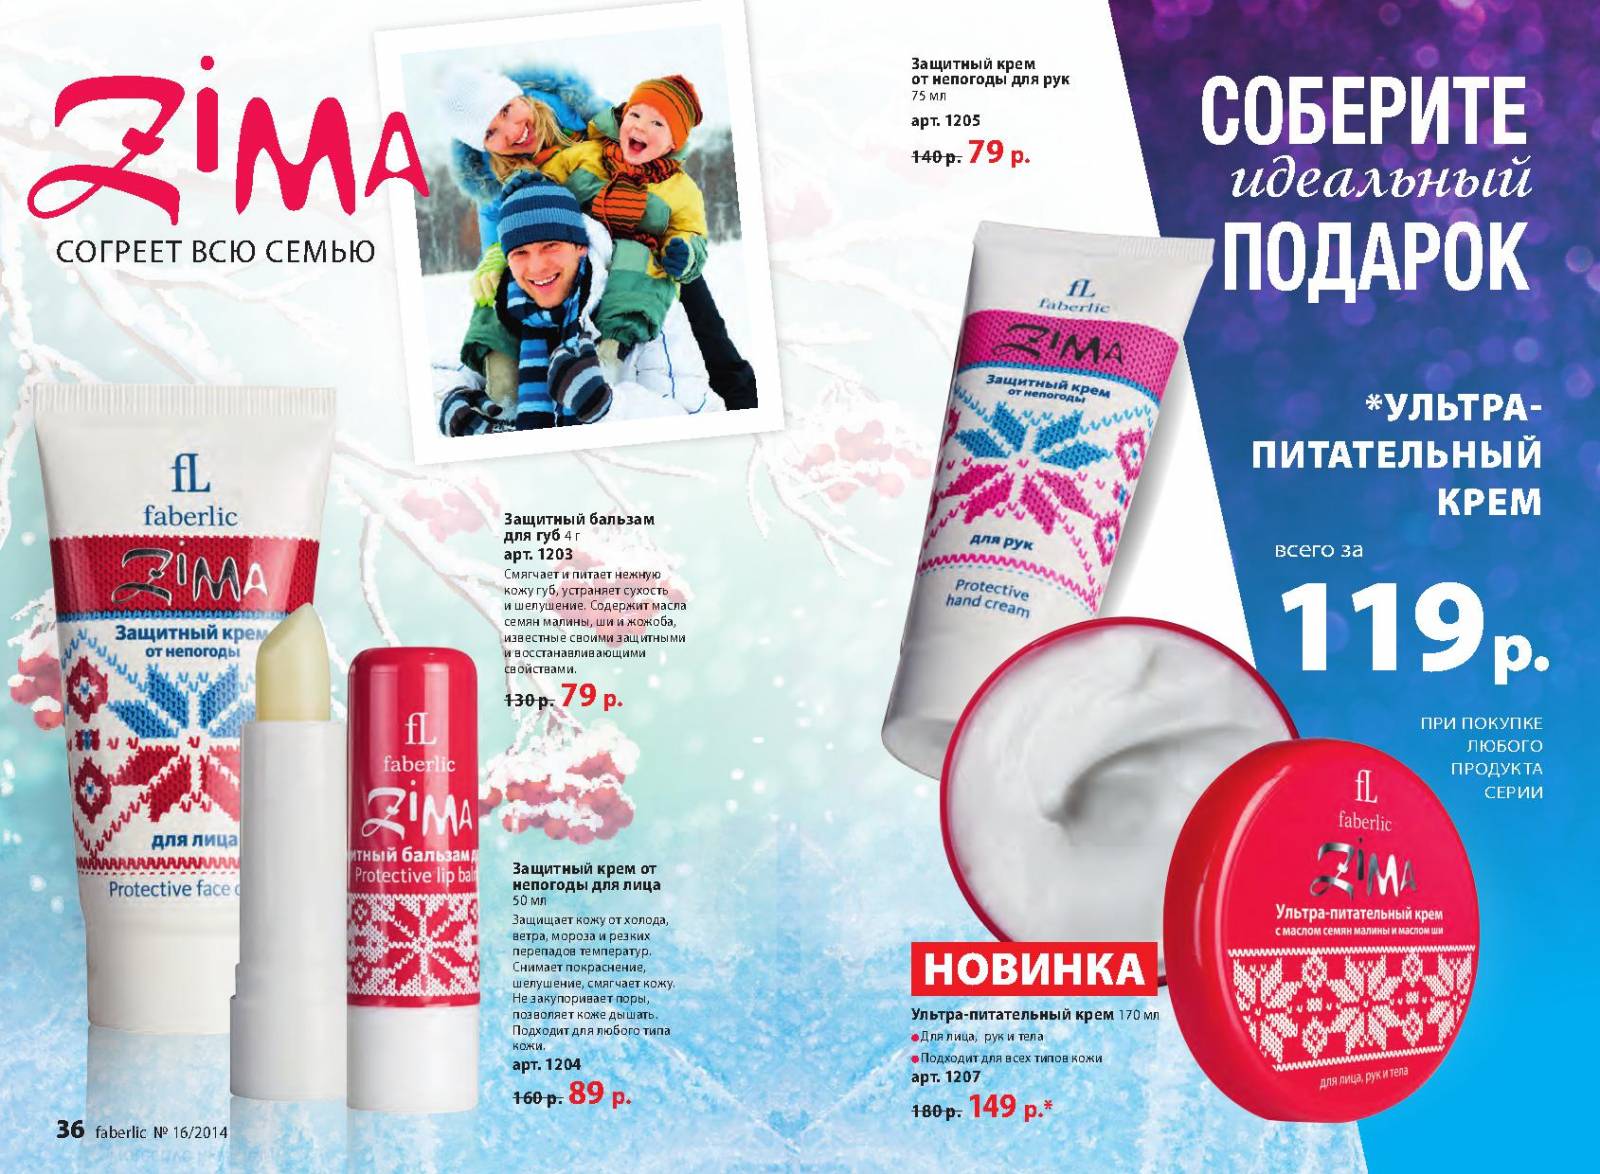 Ультра-питательный крем для лица, рук и тела faberlic zima - отзывы на i-otzovik.ru